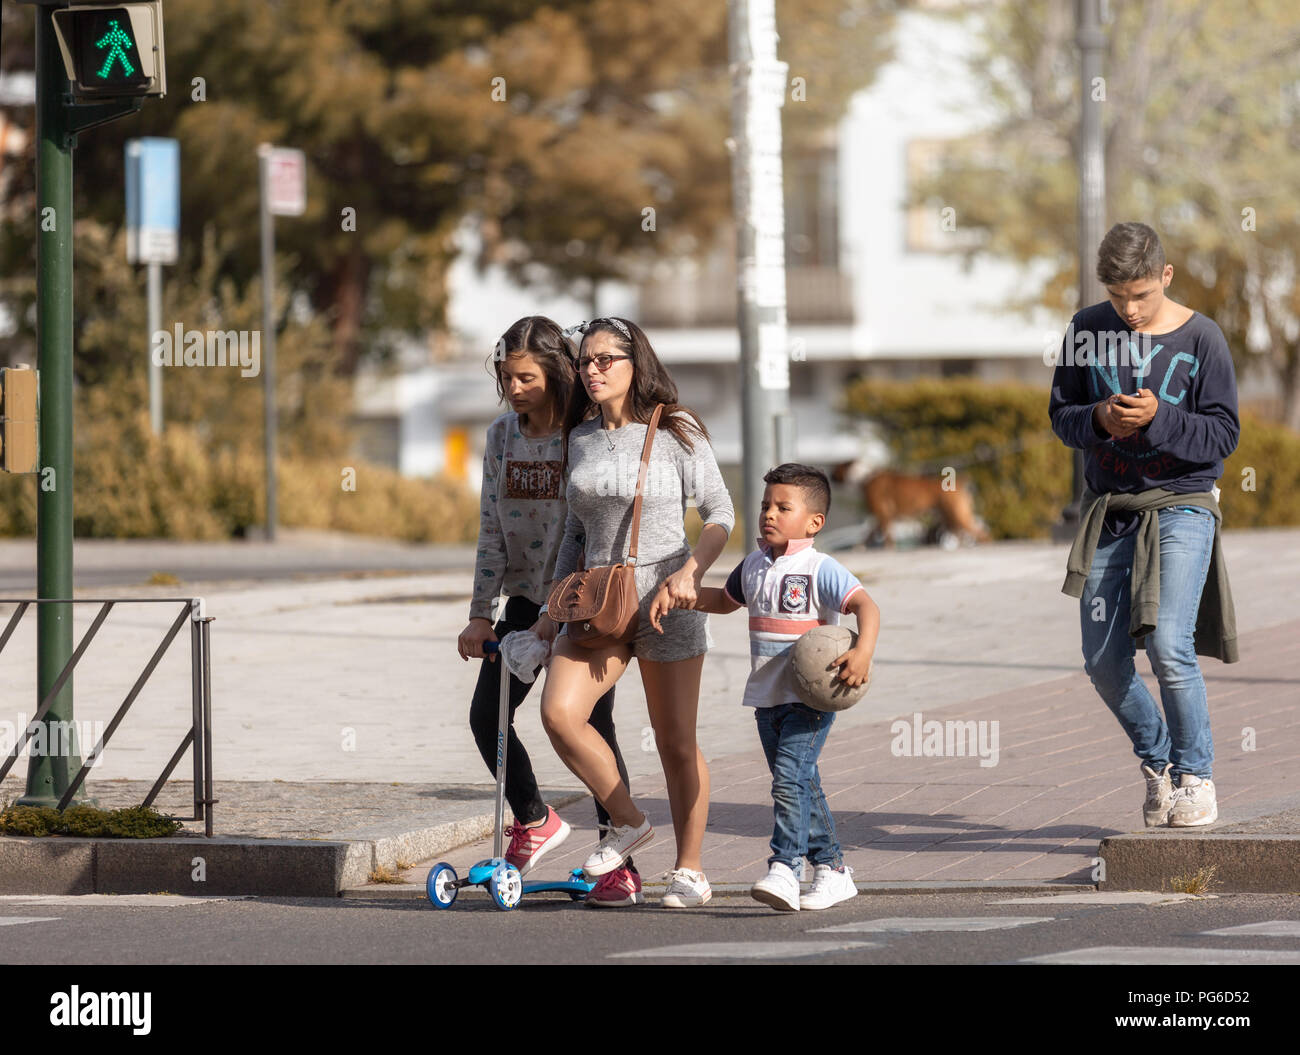 Diese latino Familie beginnt, die Straße zu überqueren, wenn das grüne Symbol auf. Stockfoto